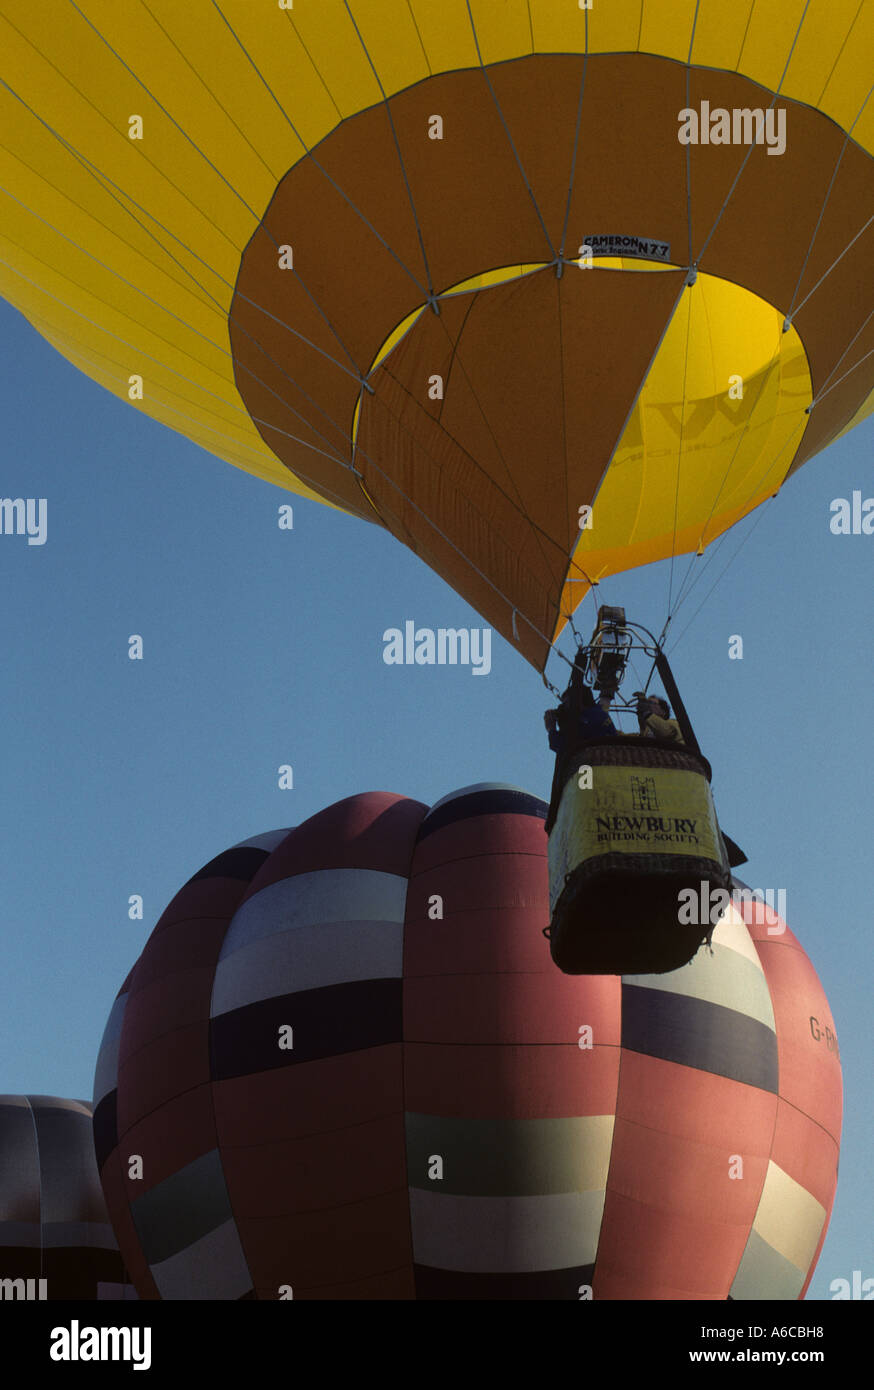 Pilot Heizung Warmluft in einem Ballon mit dem Brenner vor nehmen  off.holding der Ballon zu öffnen. Ballon Reg Nummer G-BFU Stockfotografie -  Alamy